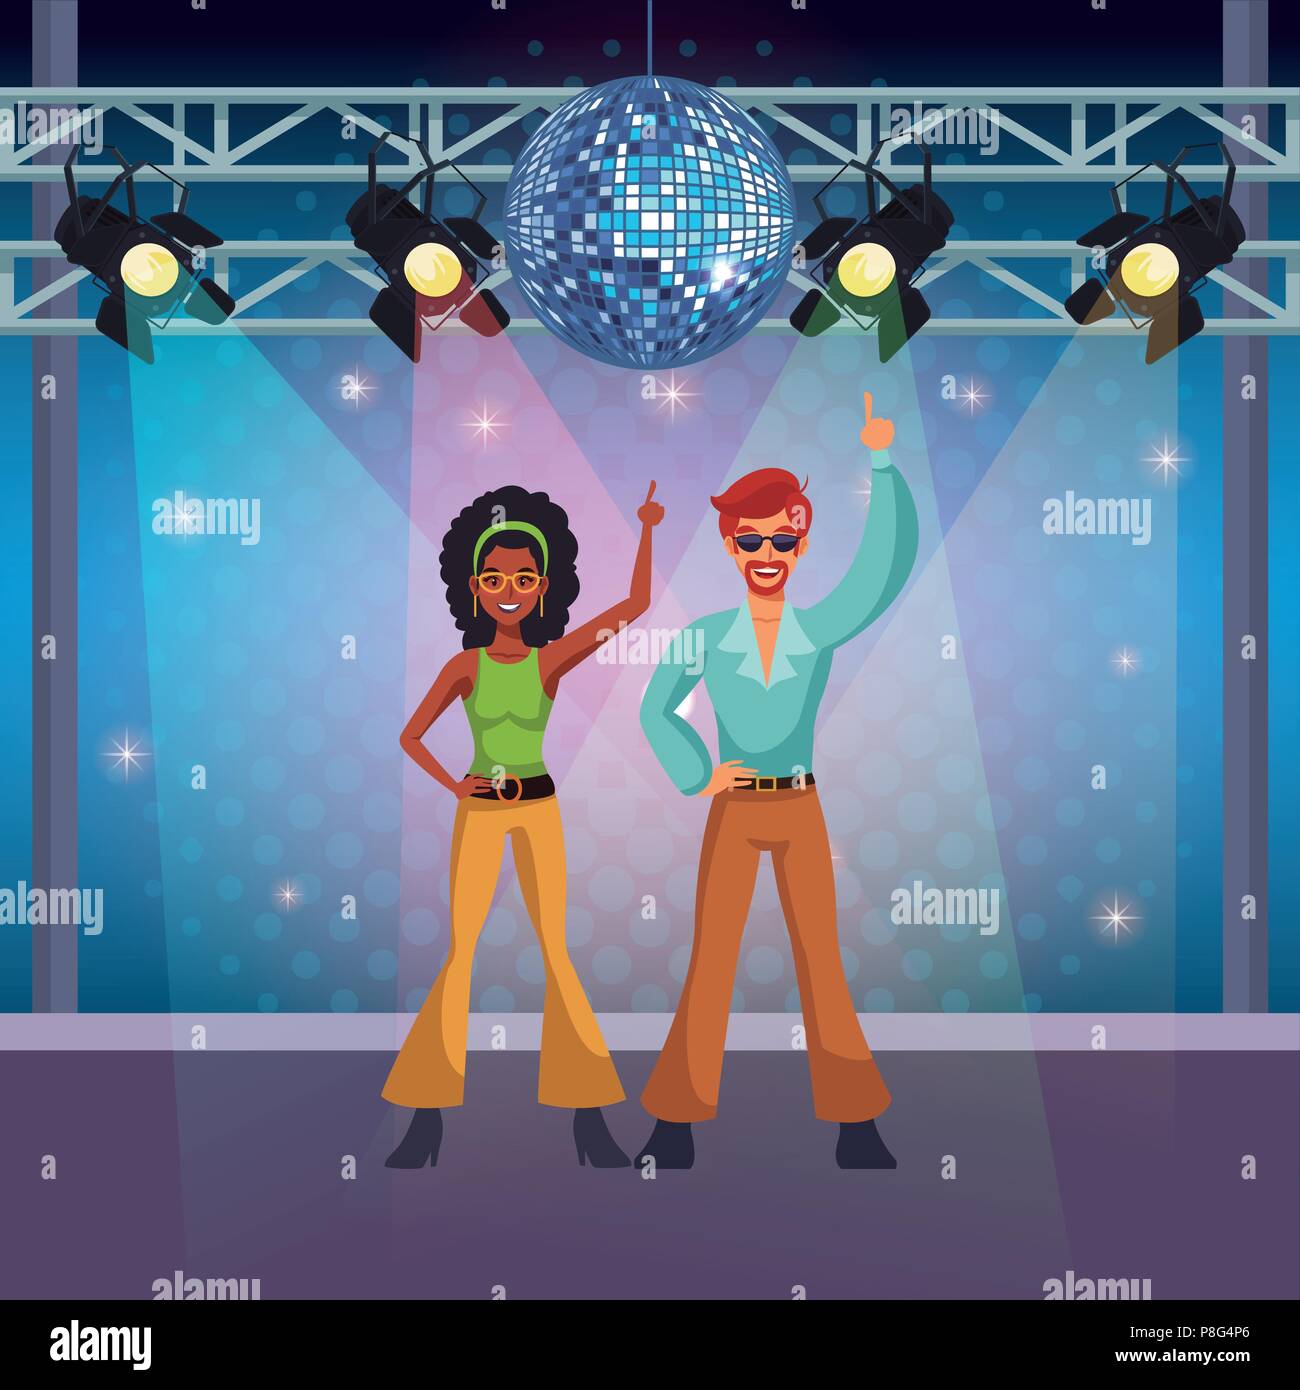 People dancing disco cartoons Stock Vector Image & Art - Alamy